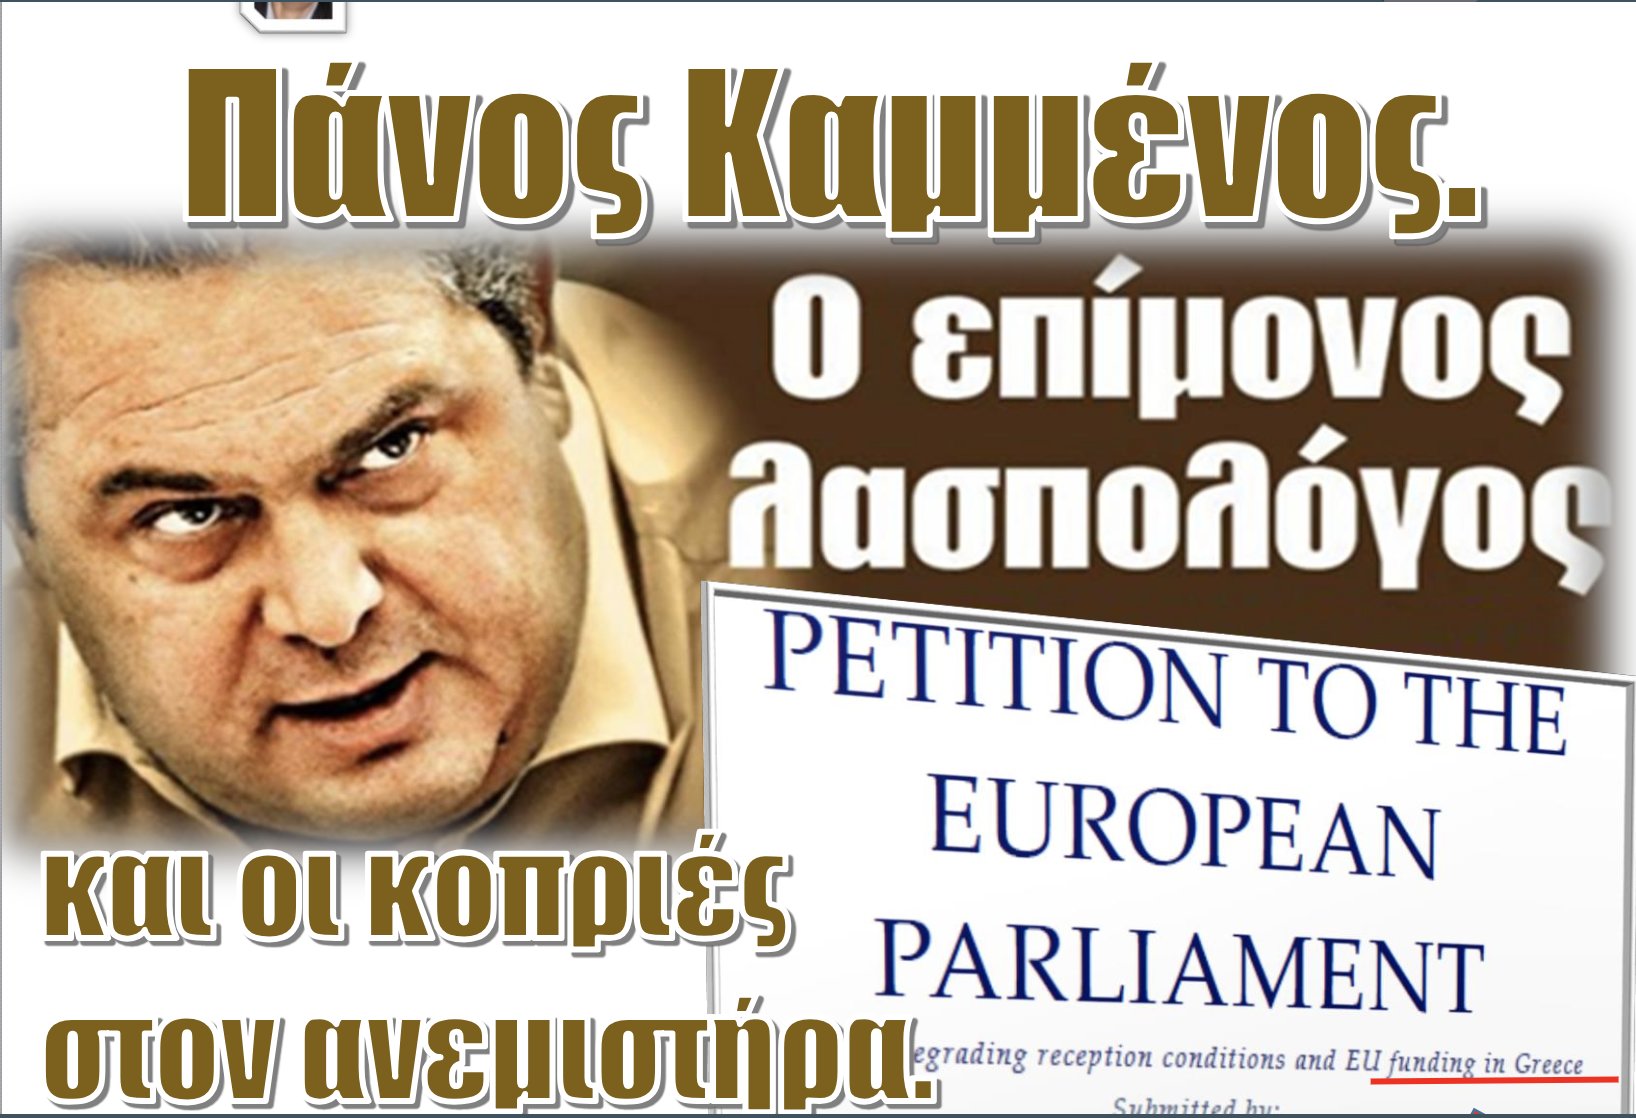 “Ξέσπασε” εναντίον του Σόρος ο Πάνος Καμμένος επειδή τον κατήγγειλε στην ΕΕ για κακοδιαχείριση ευρωπαϊκών κονδυλίων!